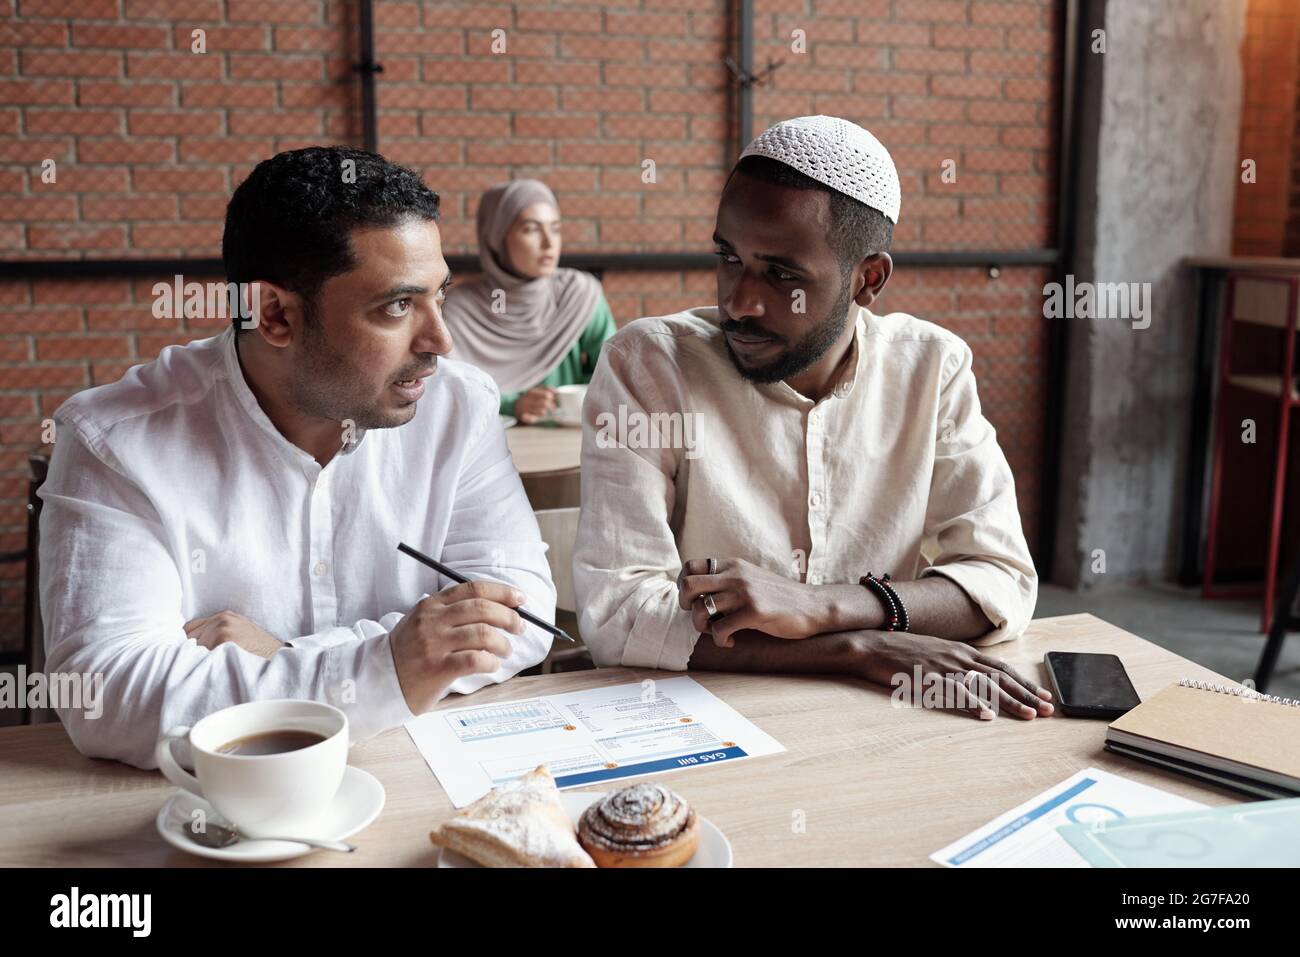 Beschäftigte junge, multiethnische Geschäftsleute in islamischen Outfits, die im Café am Tisch sitzen und über die Tafel diskutieren Stockfoto